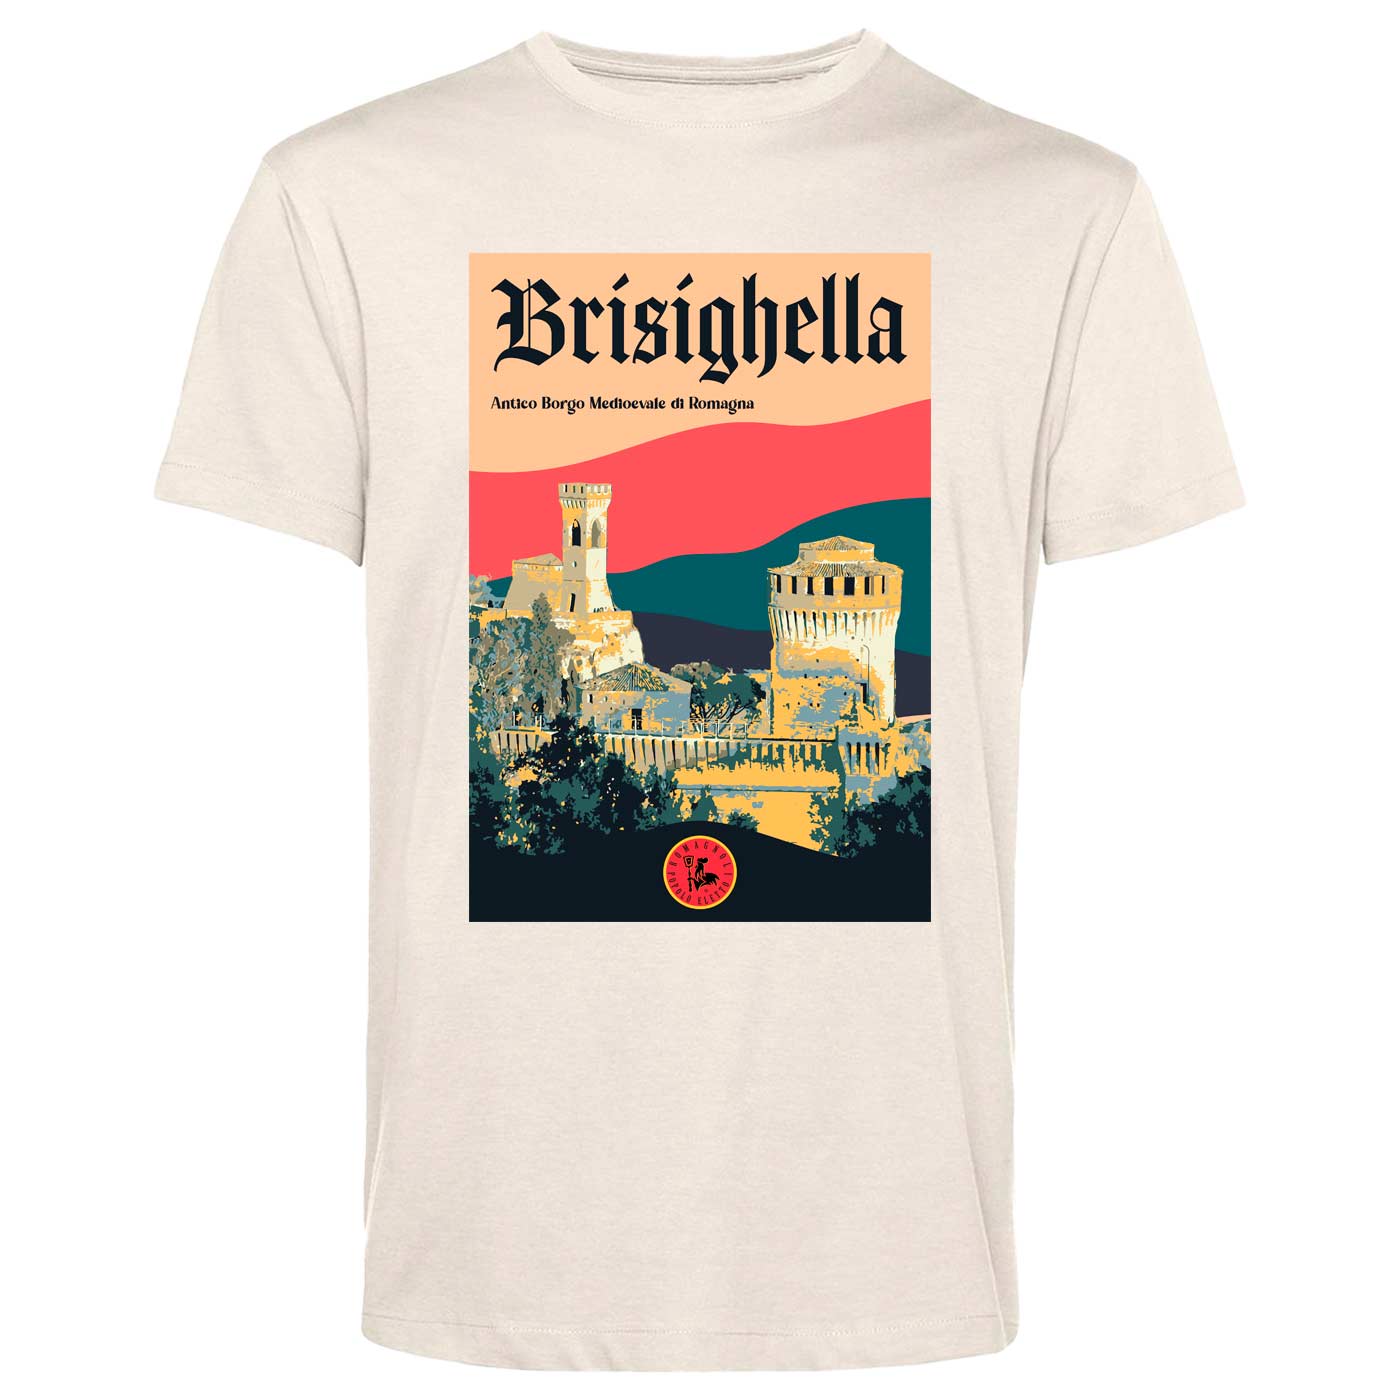 Brisighella